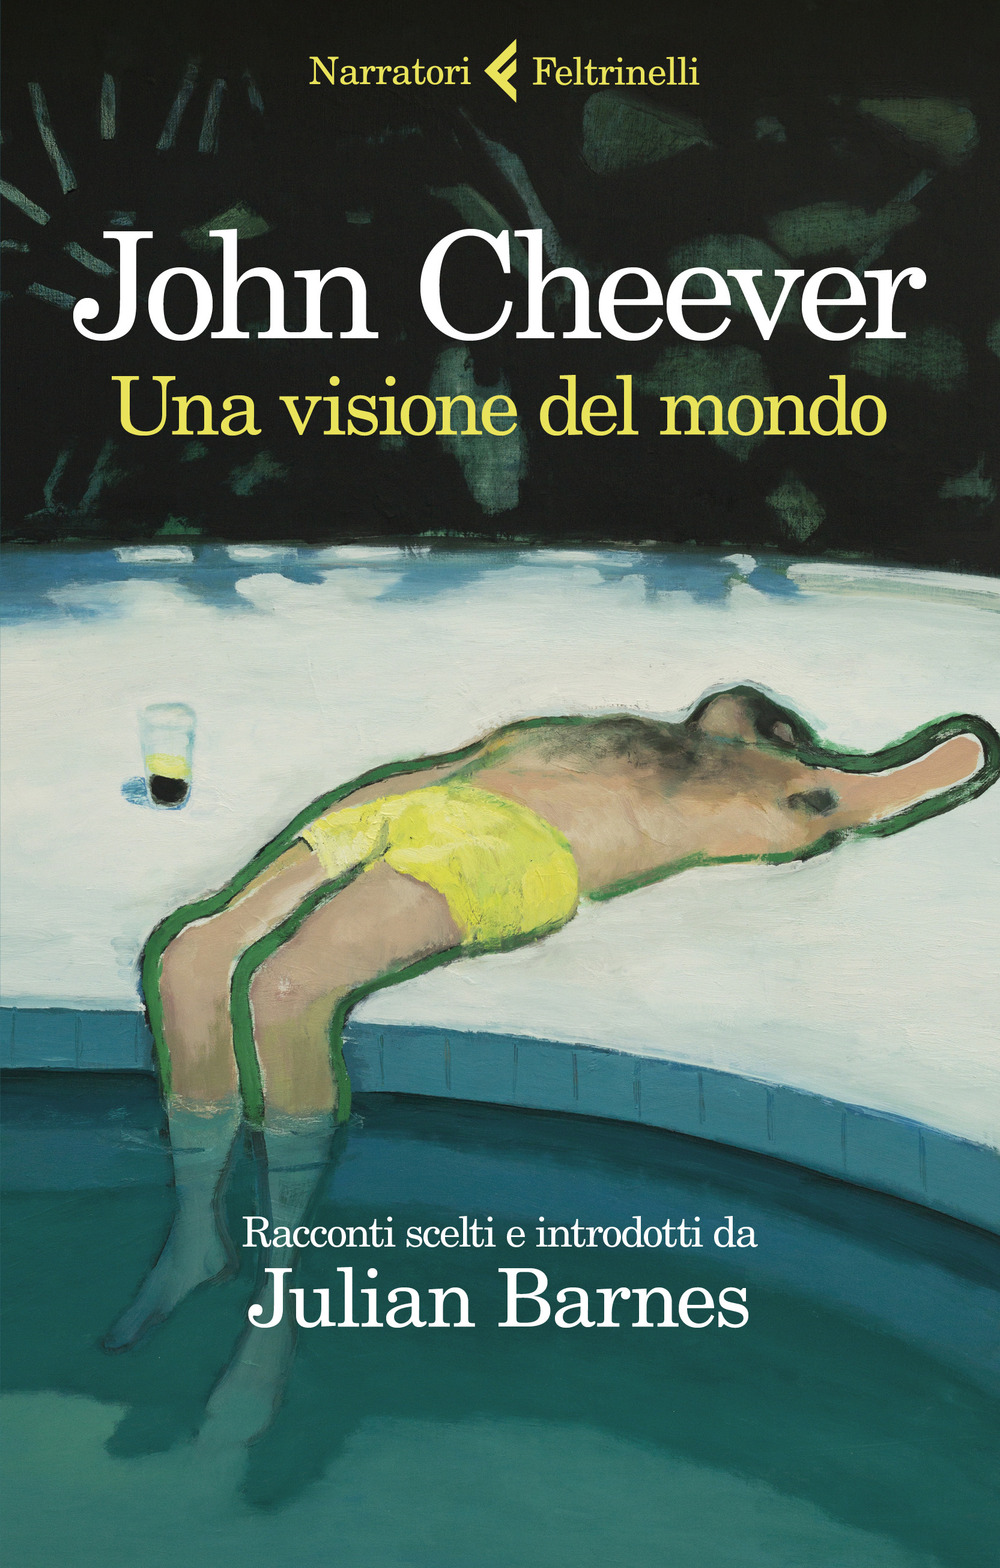 Libri John Cheever - Una Visione Del Mondo NUOVO SIGILLATO, EDIZIONE DEL 16/09/2021 SUBITO DISPONIBILE